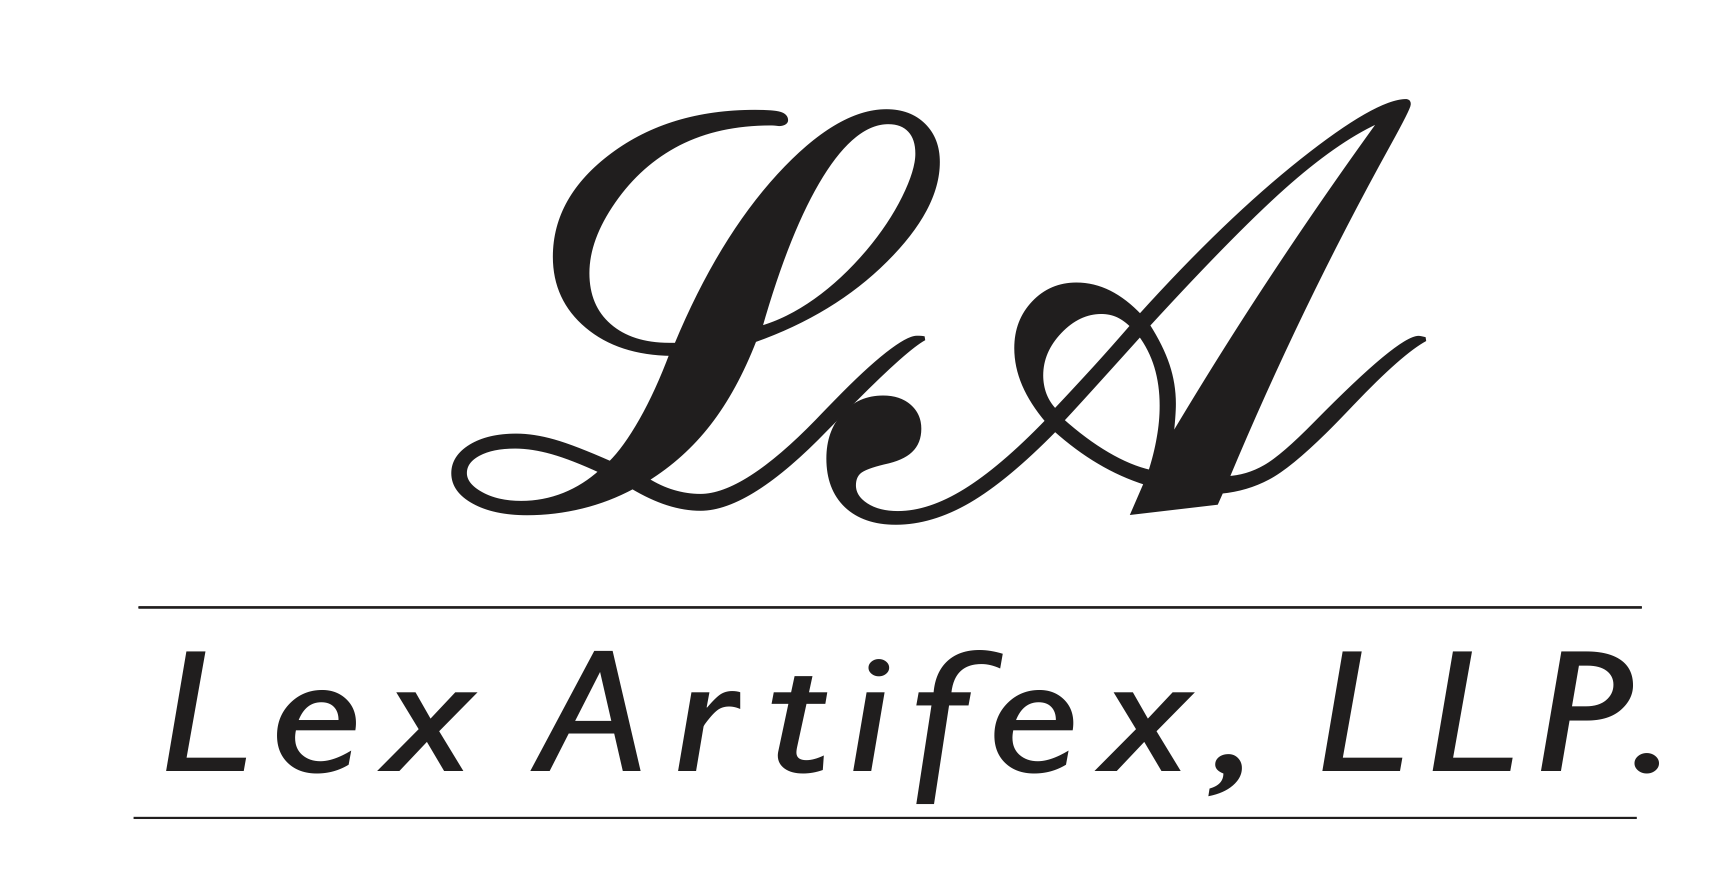 Lex Artifex LLP